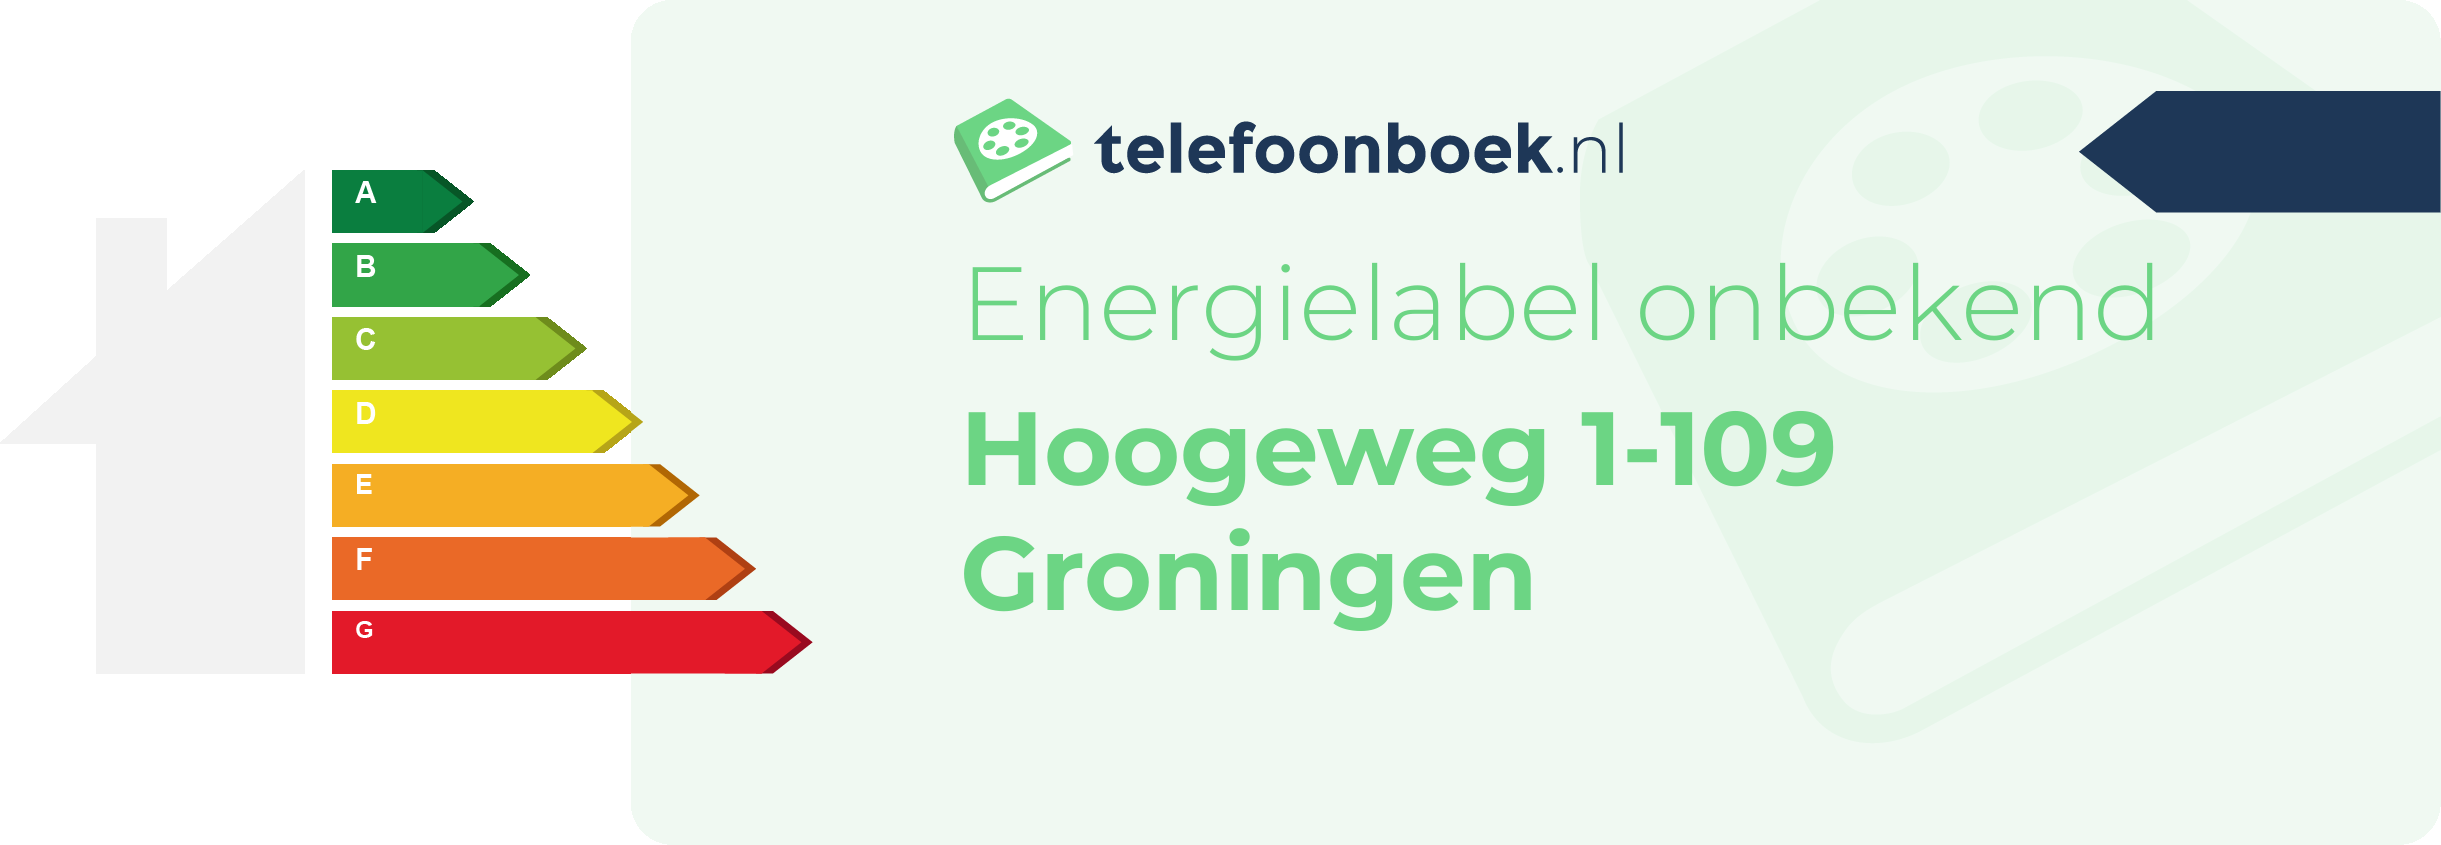 Energielabel Hoogeweg 1-109 Groningen